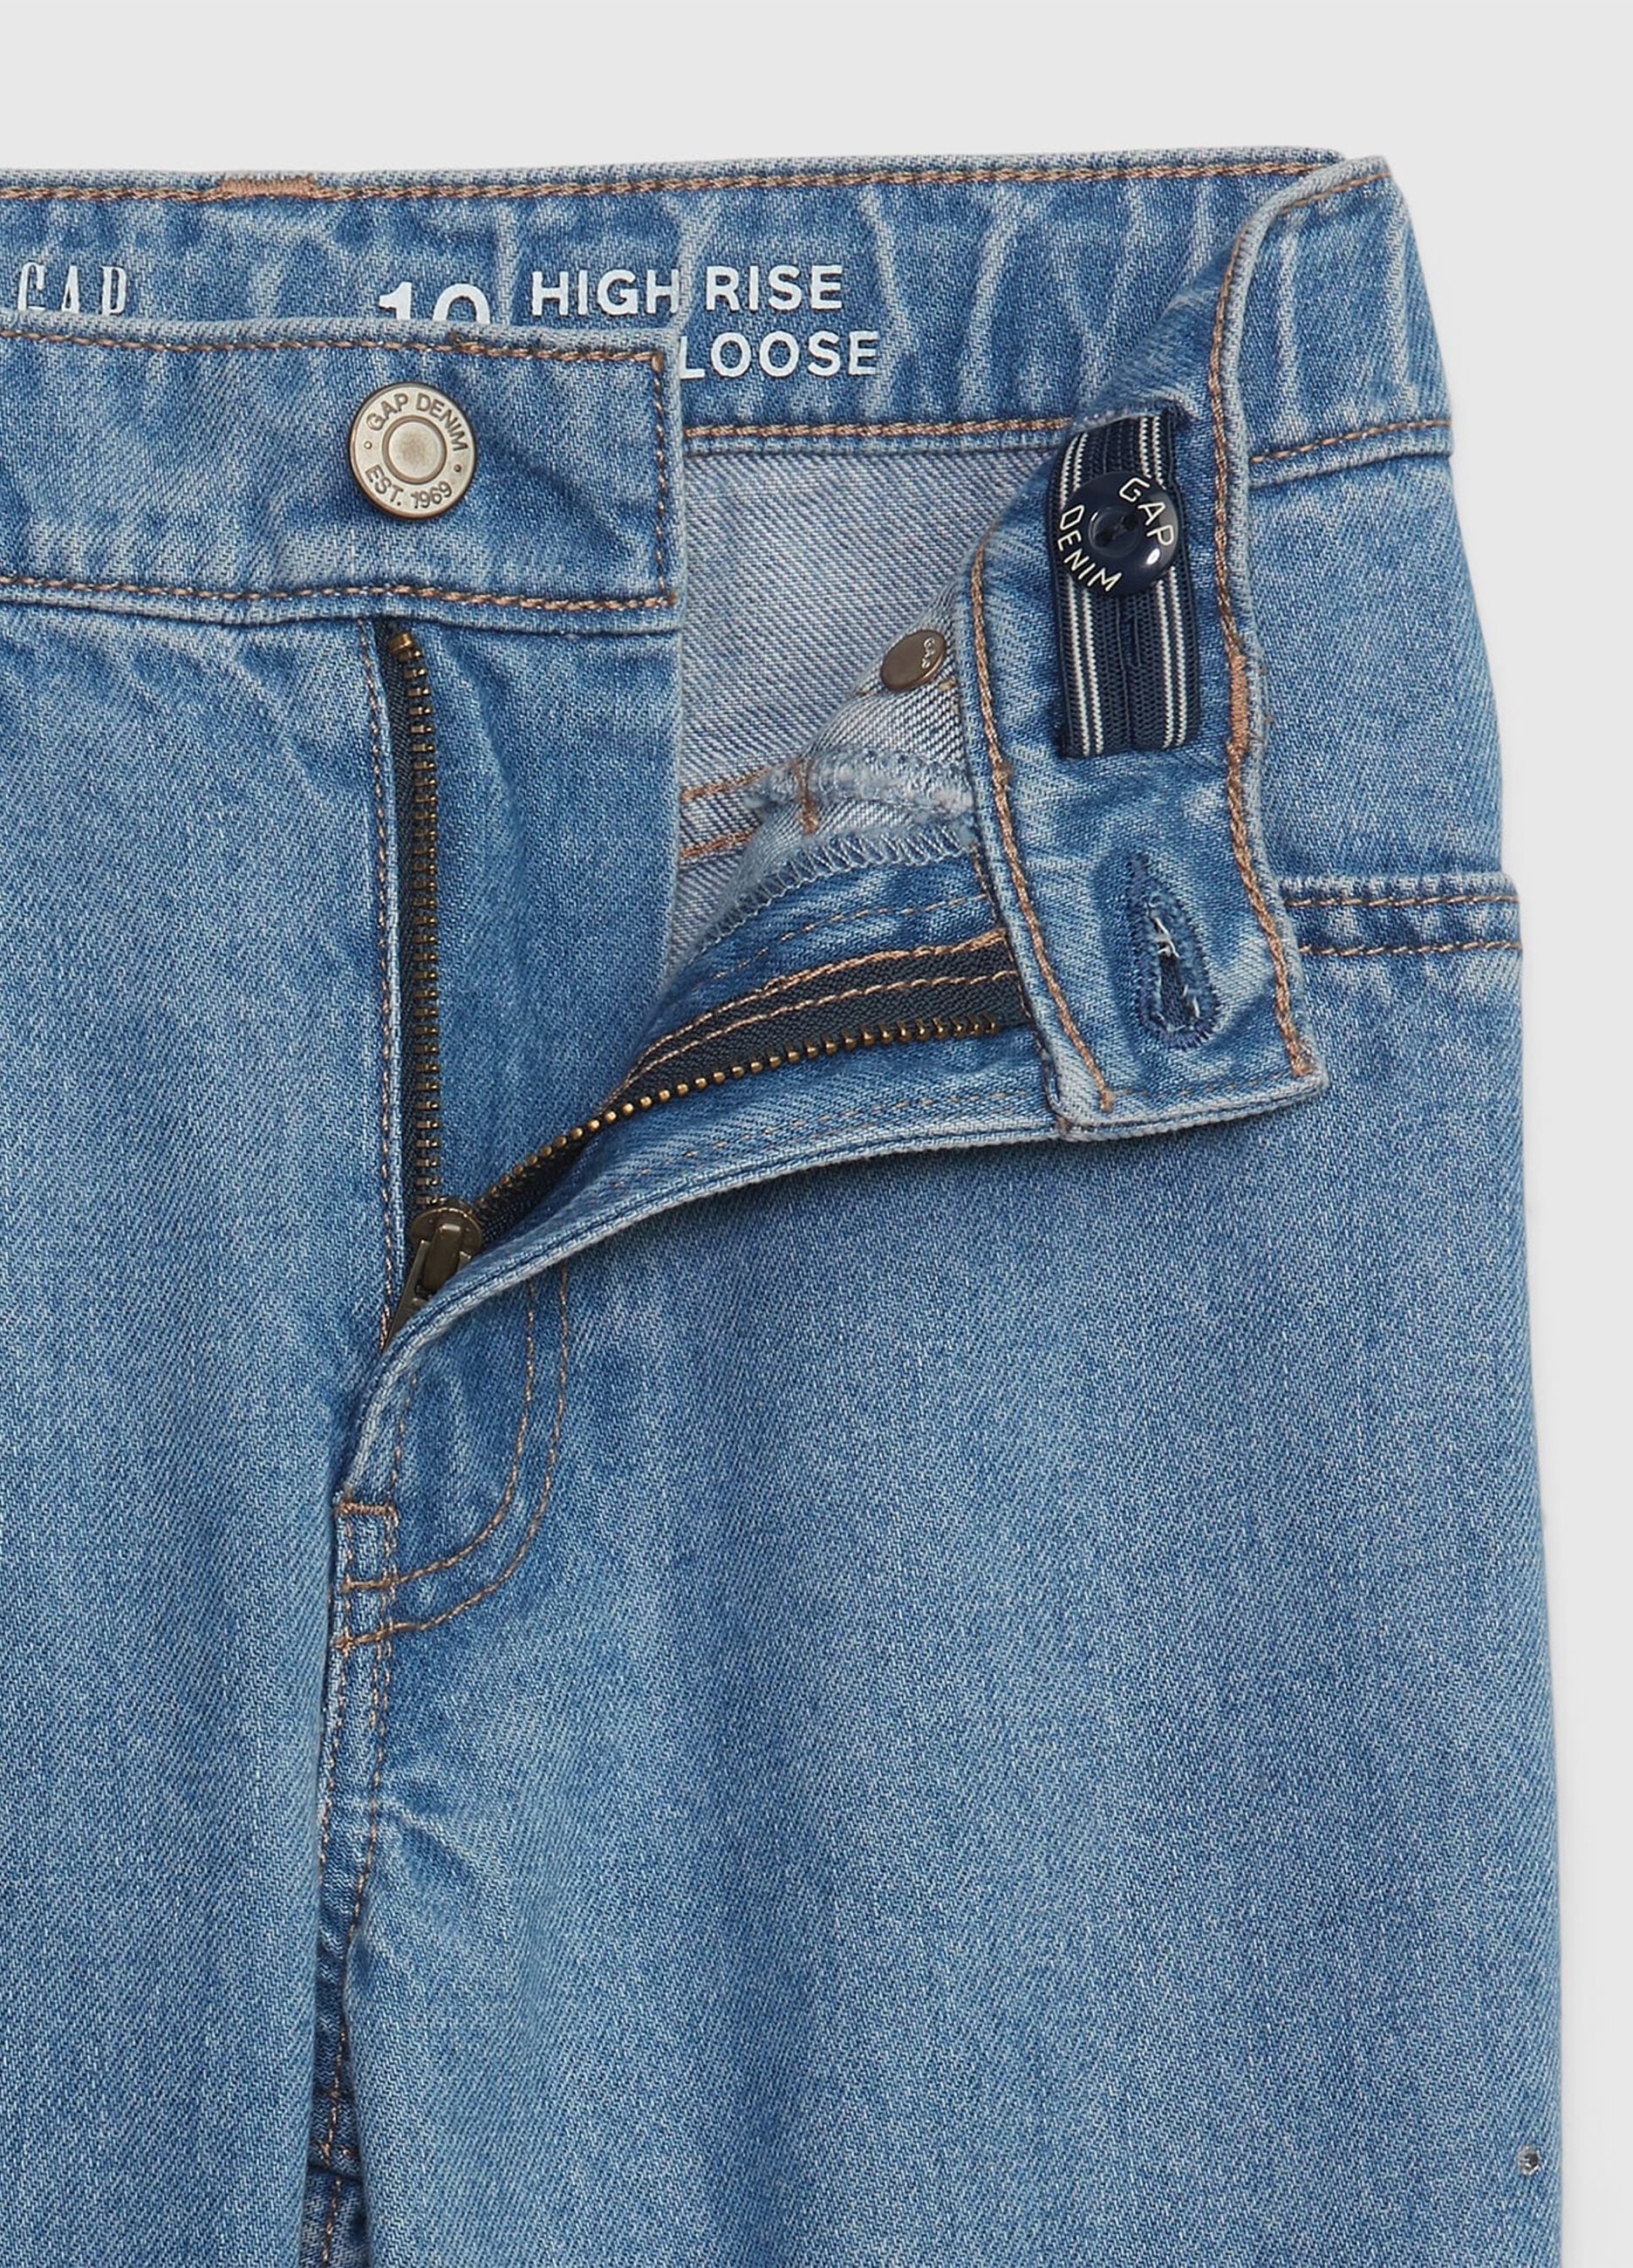 Loose-fit, high-waist jeans with diamanté_2